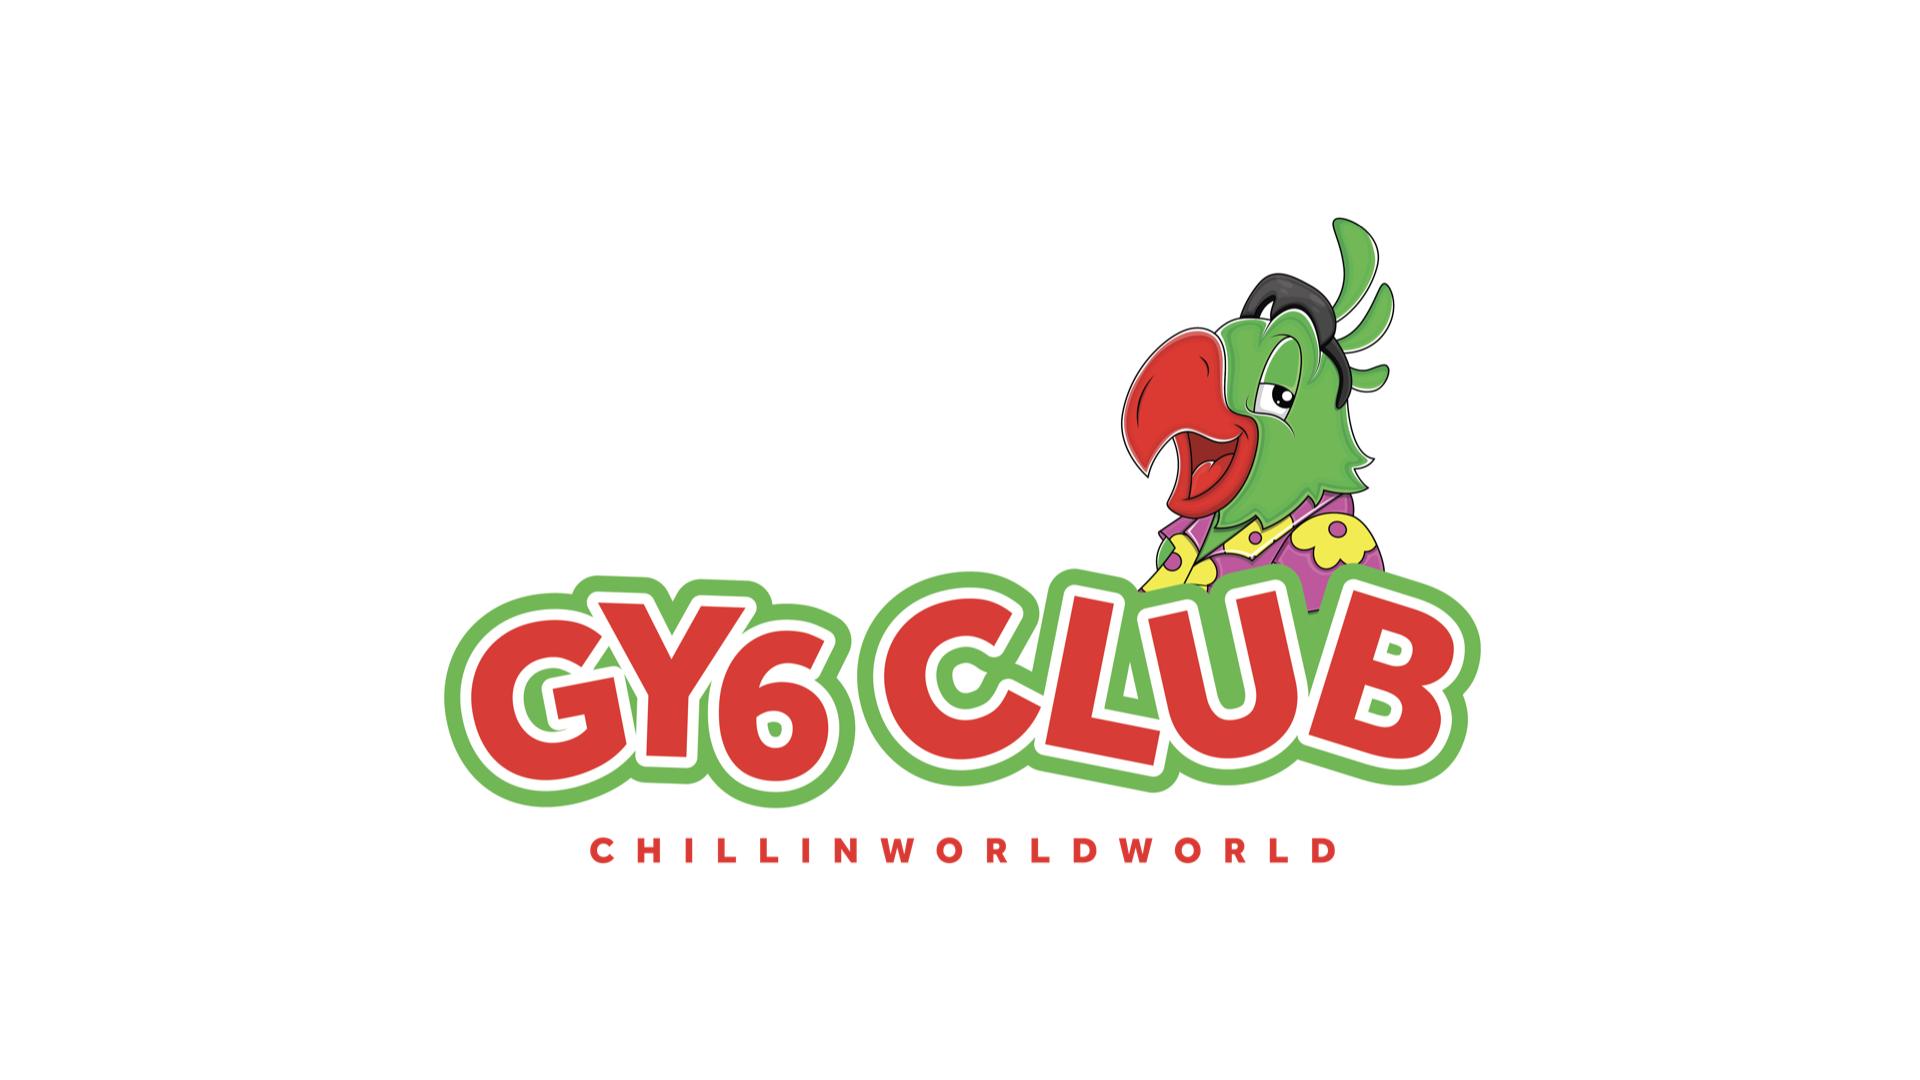 GY6 CLUB CHILLINWORLDWIDE